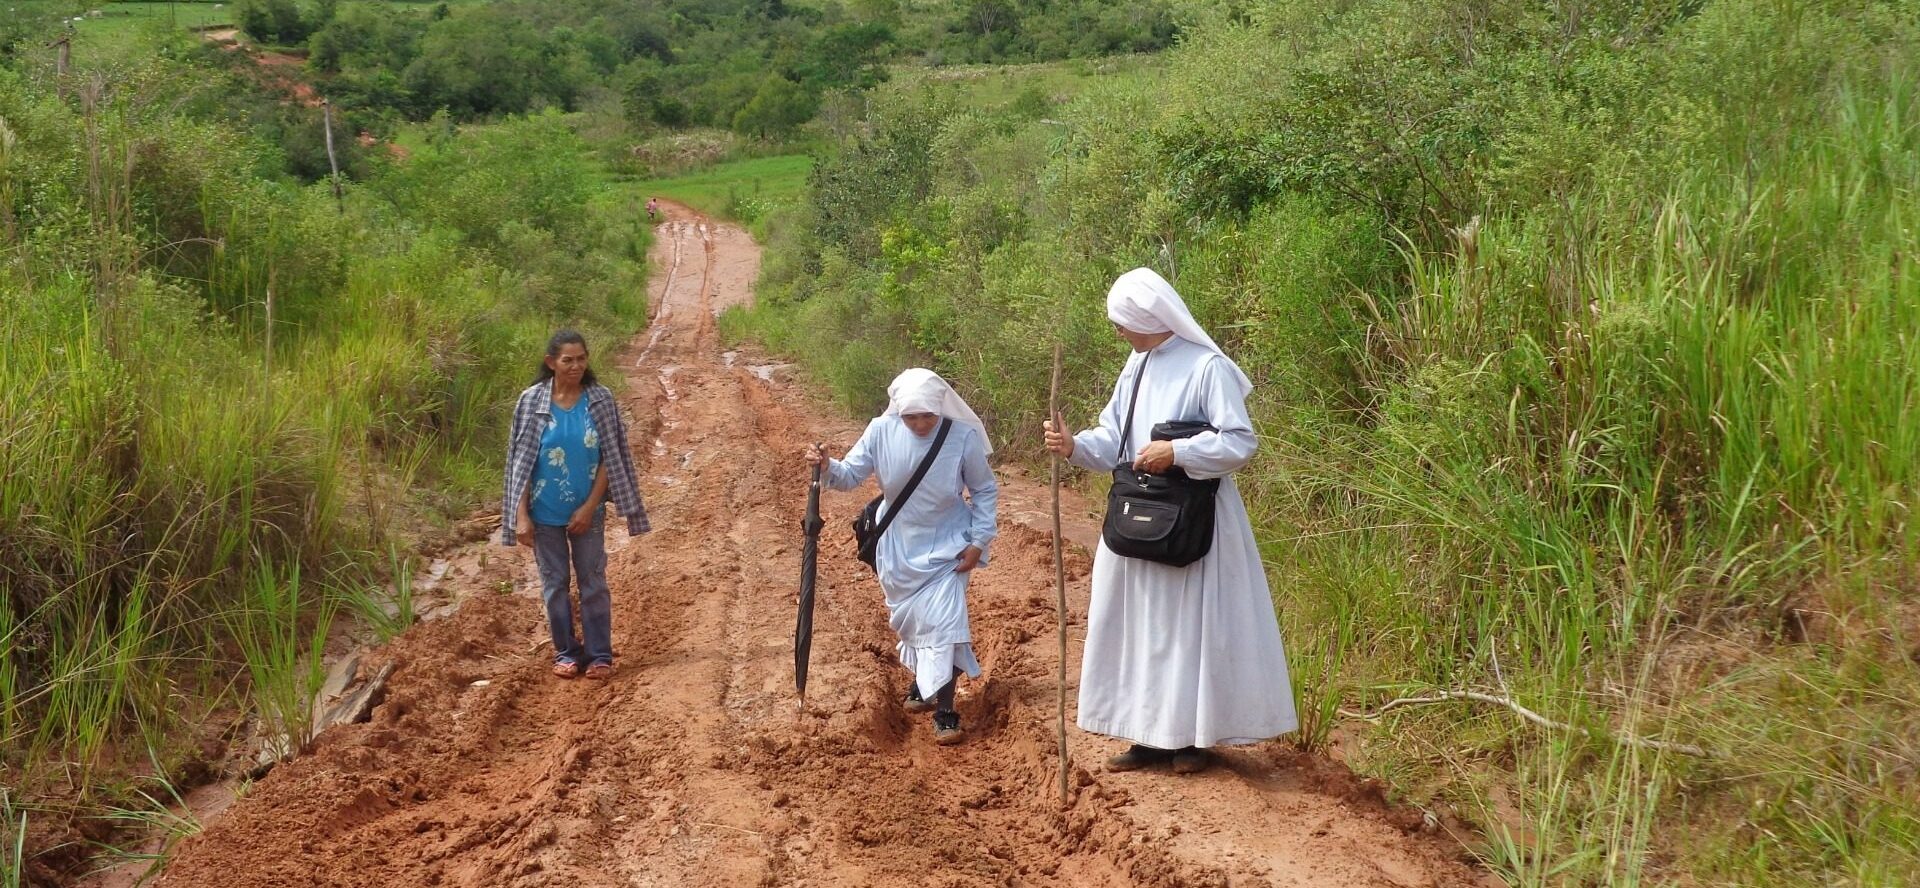 En Amérique latine notamment, les vocations religieuses féminines sont en baisse Deux religieuses de la Congrégation de Jésus Verbe et Victime, au Paraguay ! © Jacques Berset